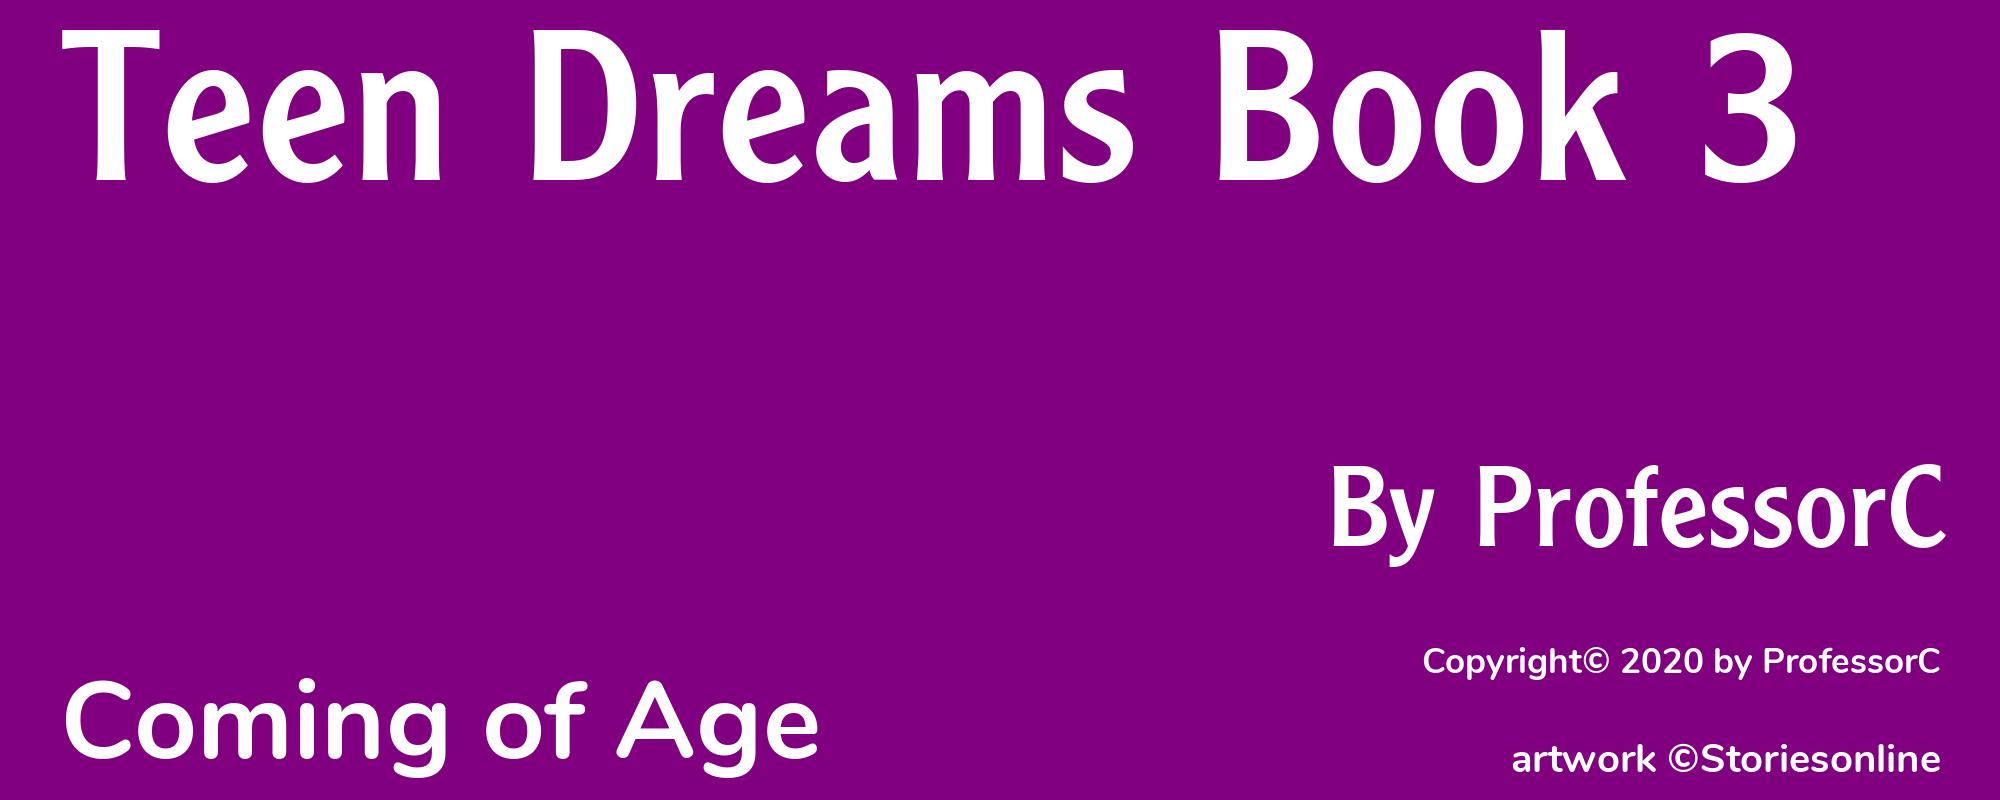 Teen Dreams Book 3 - Cover